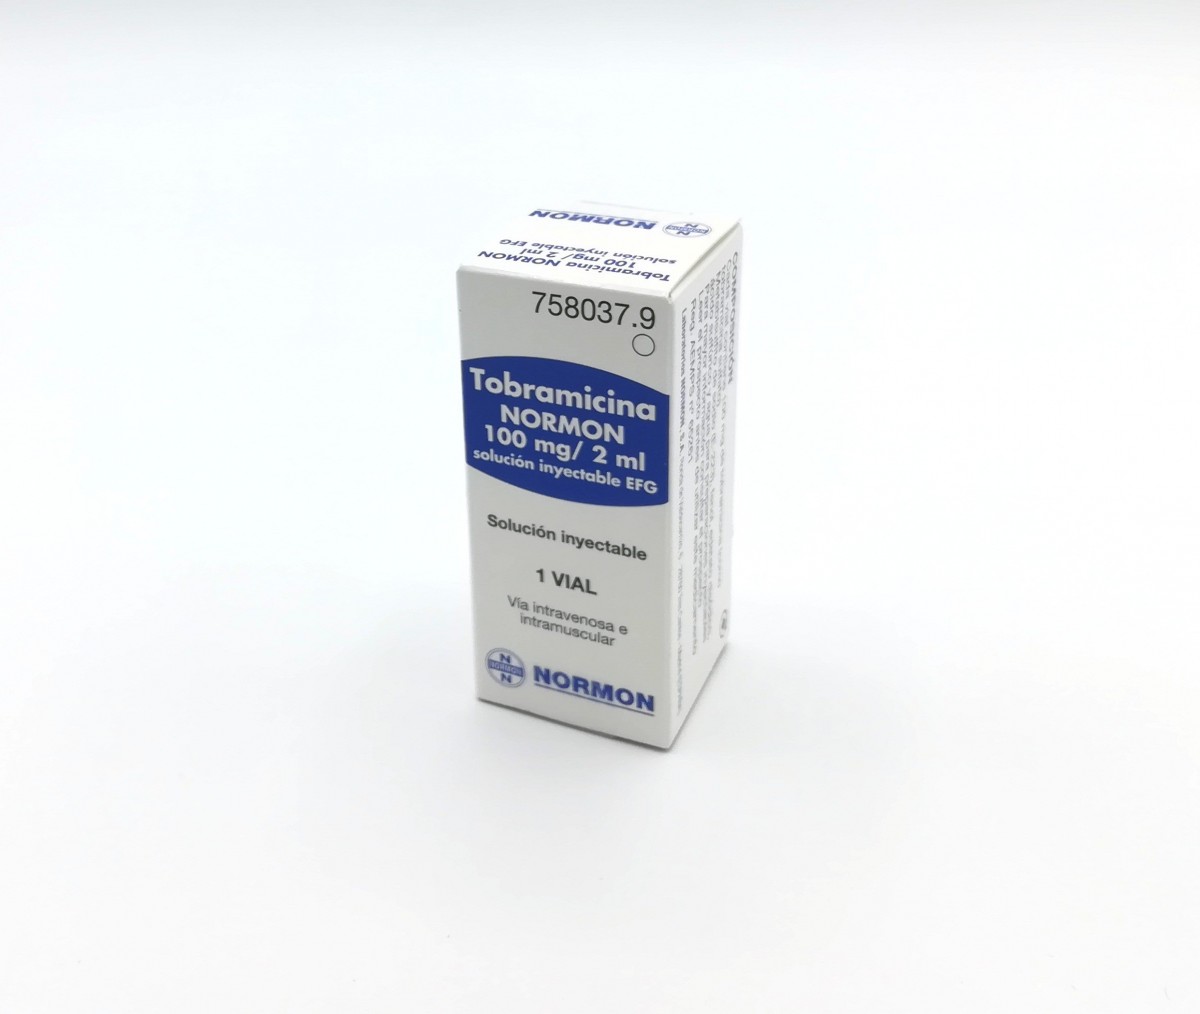 TOBRAMICINA NORMON 100 mg/2 ml SOLUCION INYECTABLE EFG , 1 vial de 2 ml fotografía del envase.